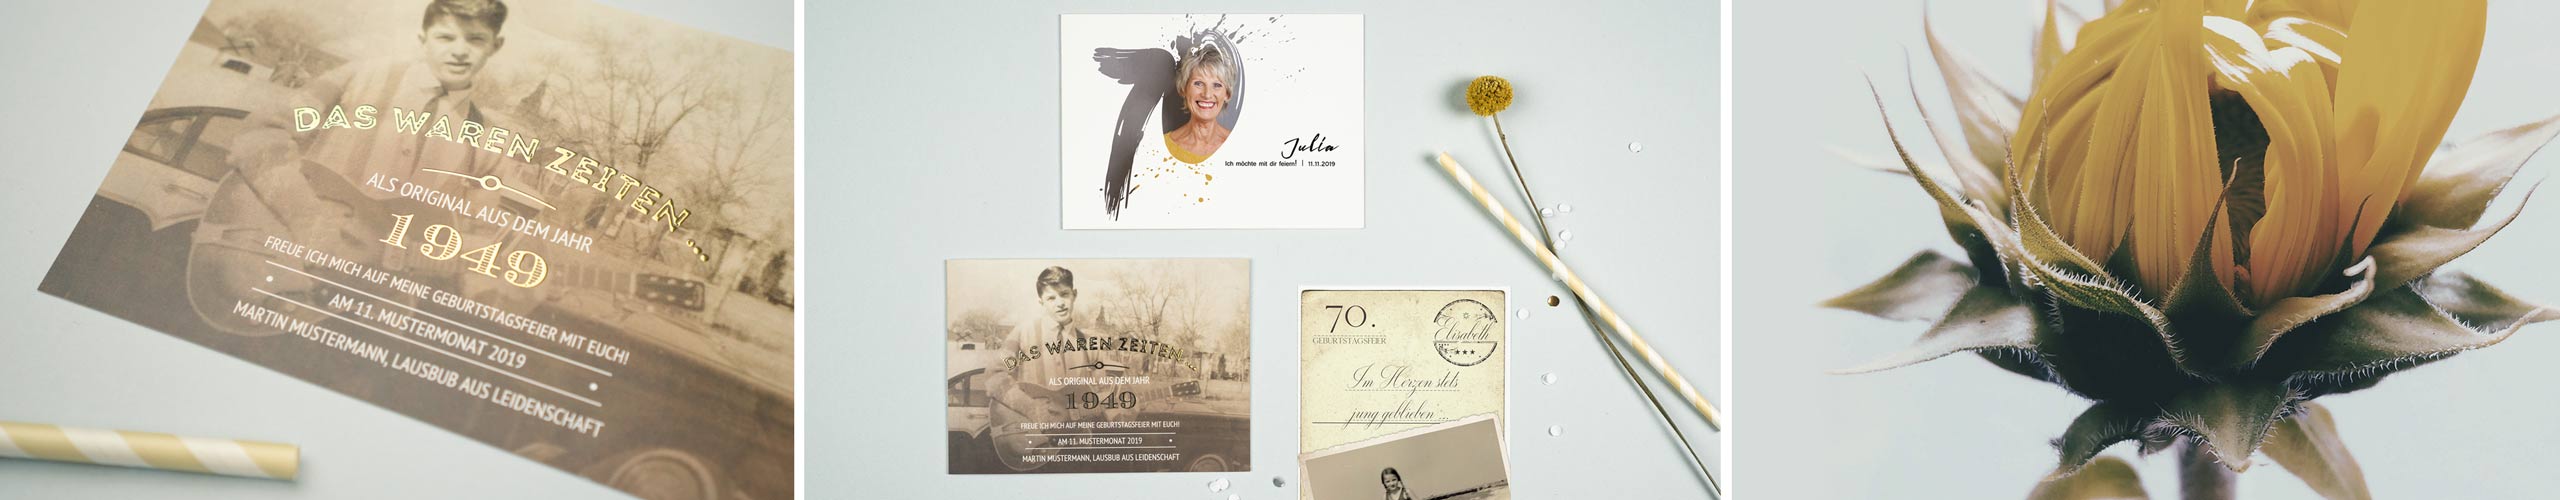 Einladungskarten zum 70. Geburtstag personalisiert mit eigenem Text und Foto